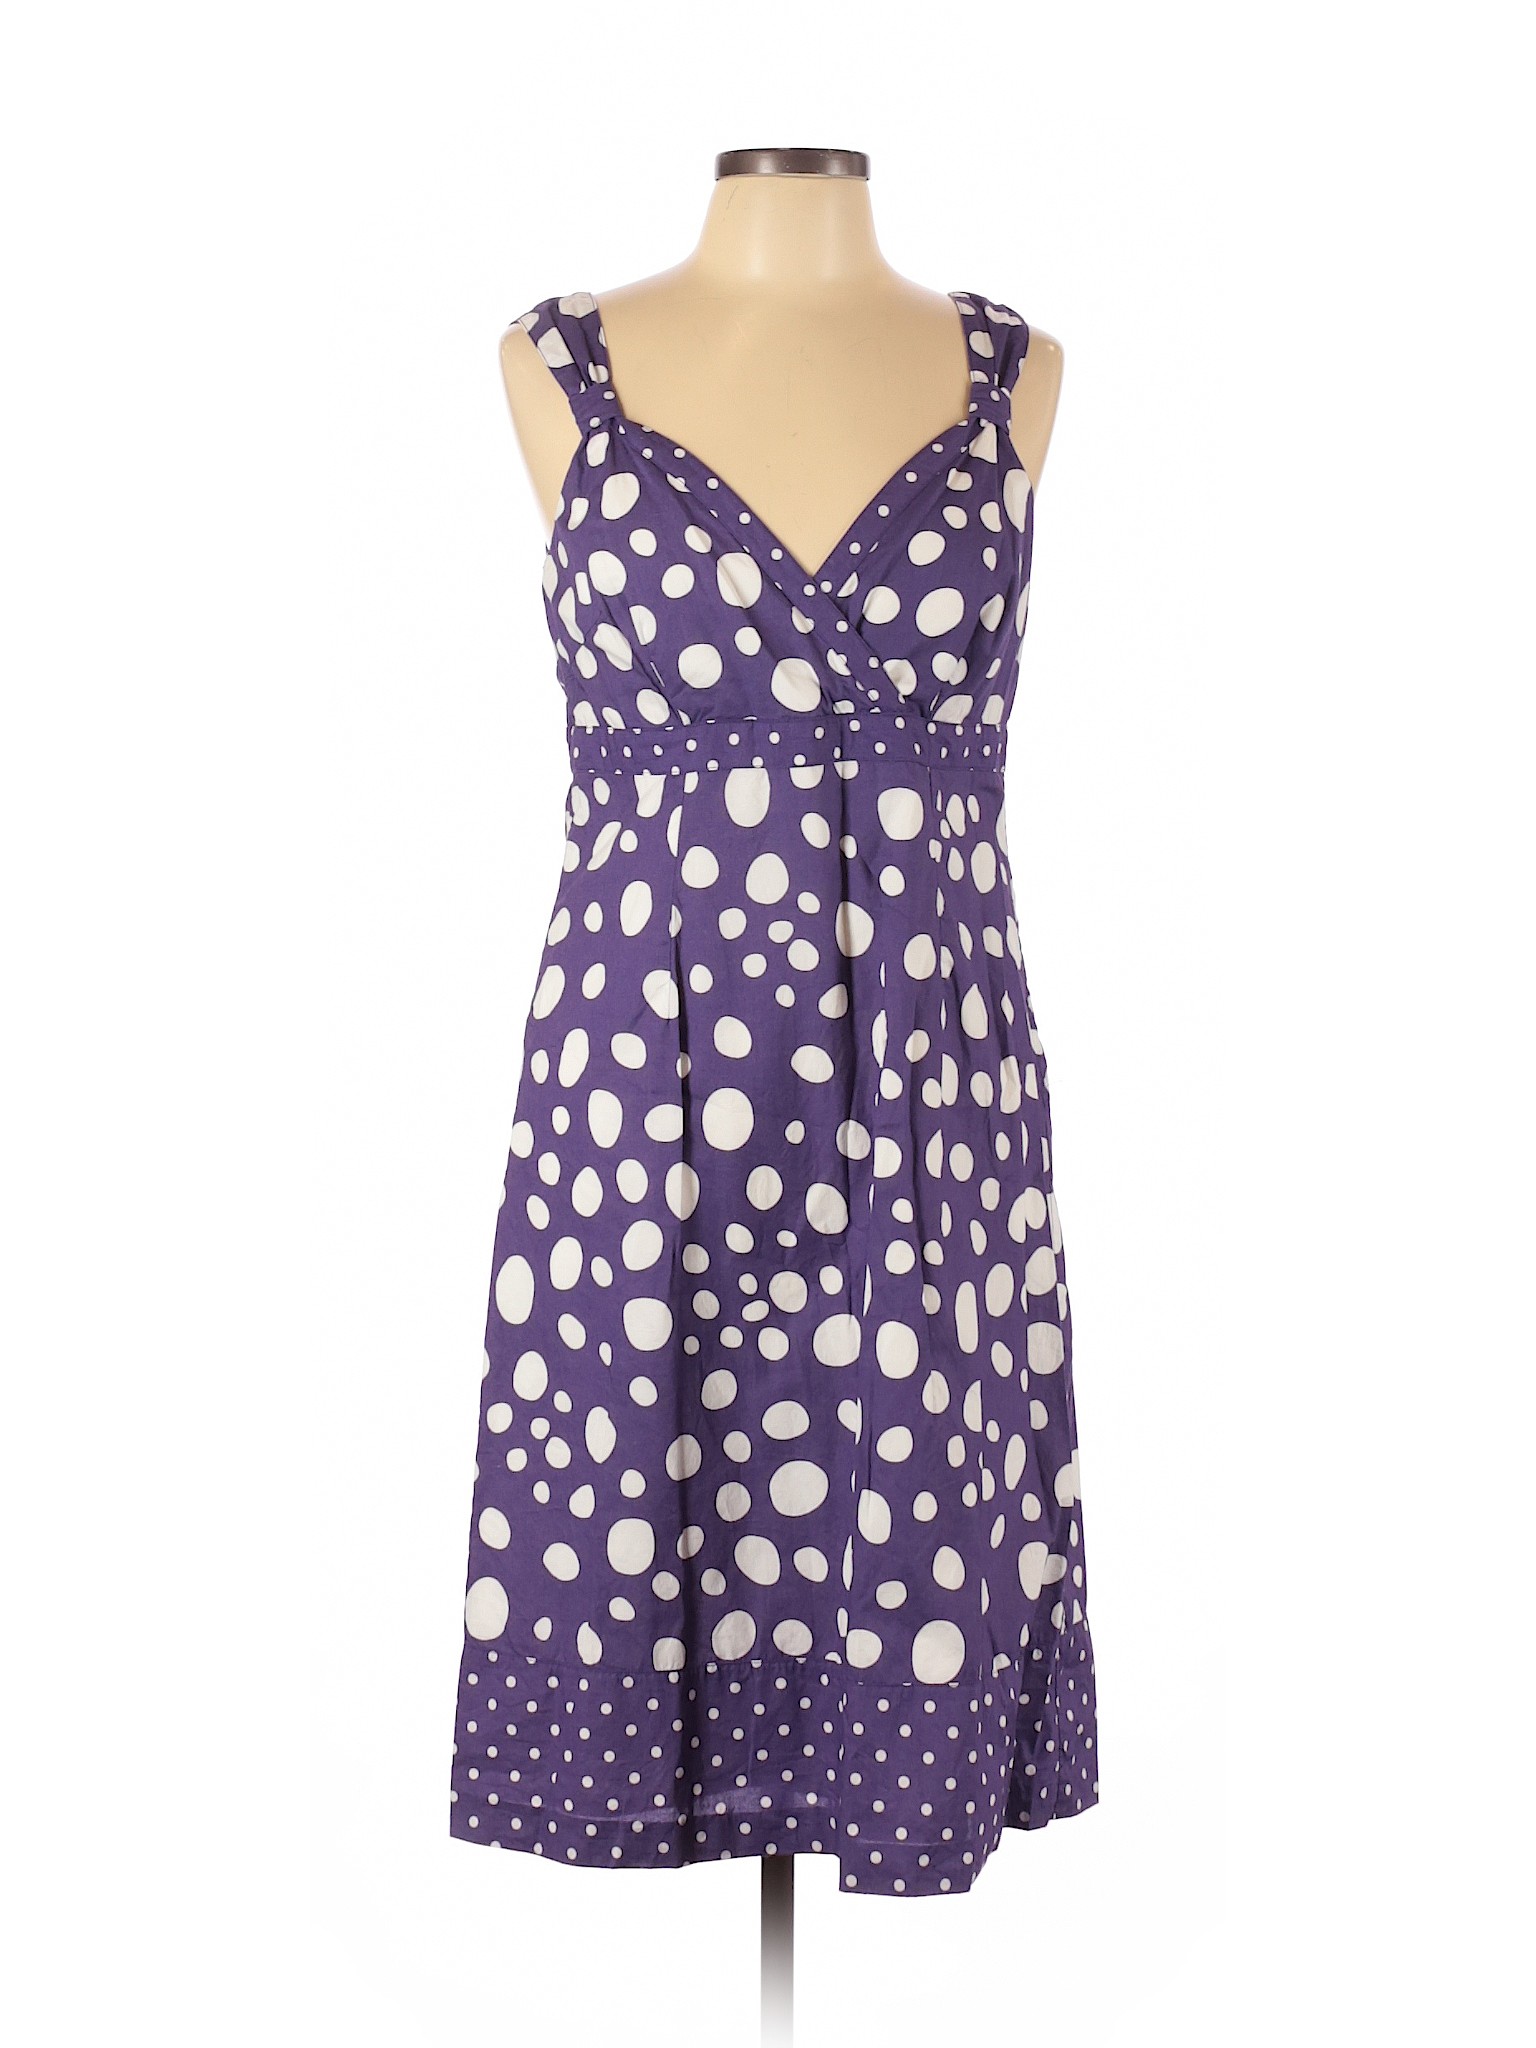 Boden Women Purple Casual Dress 10 Tall | eBay